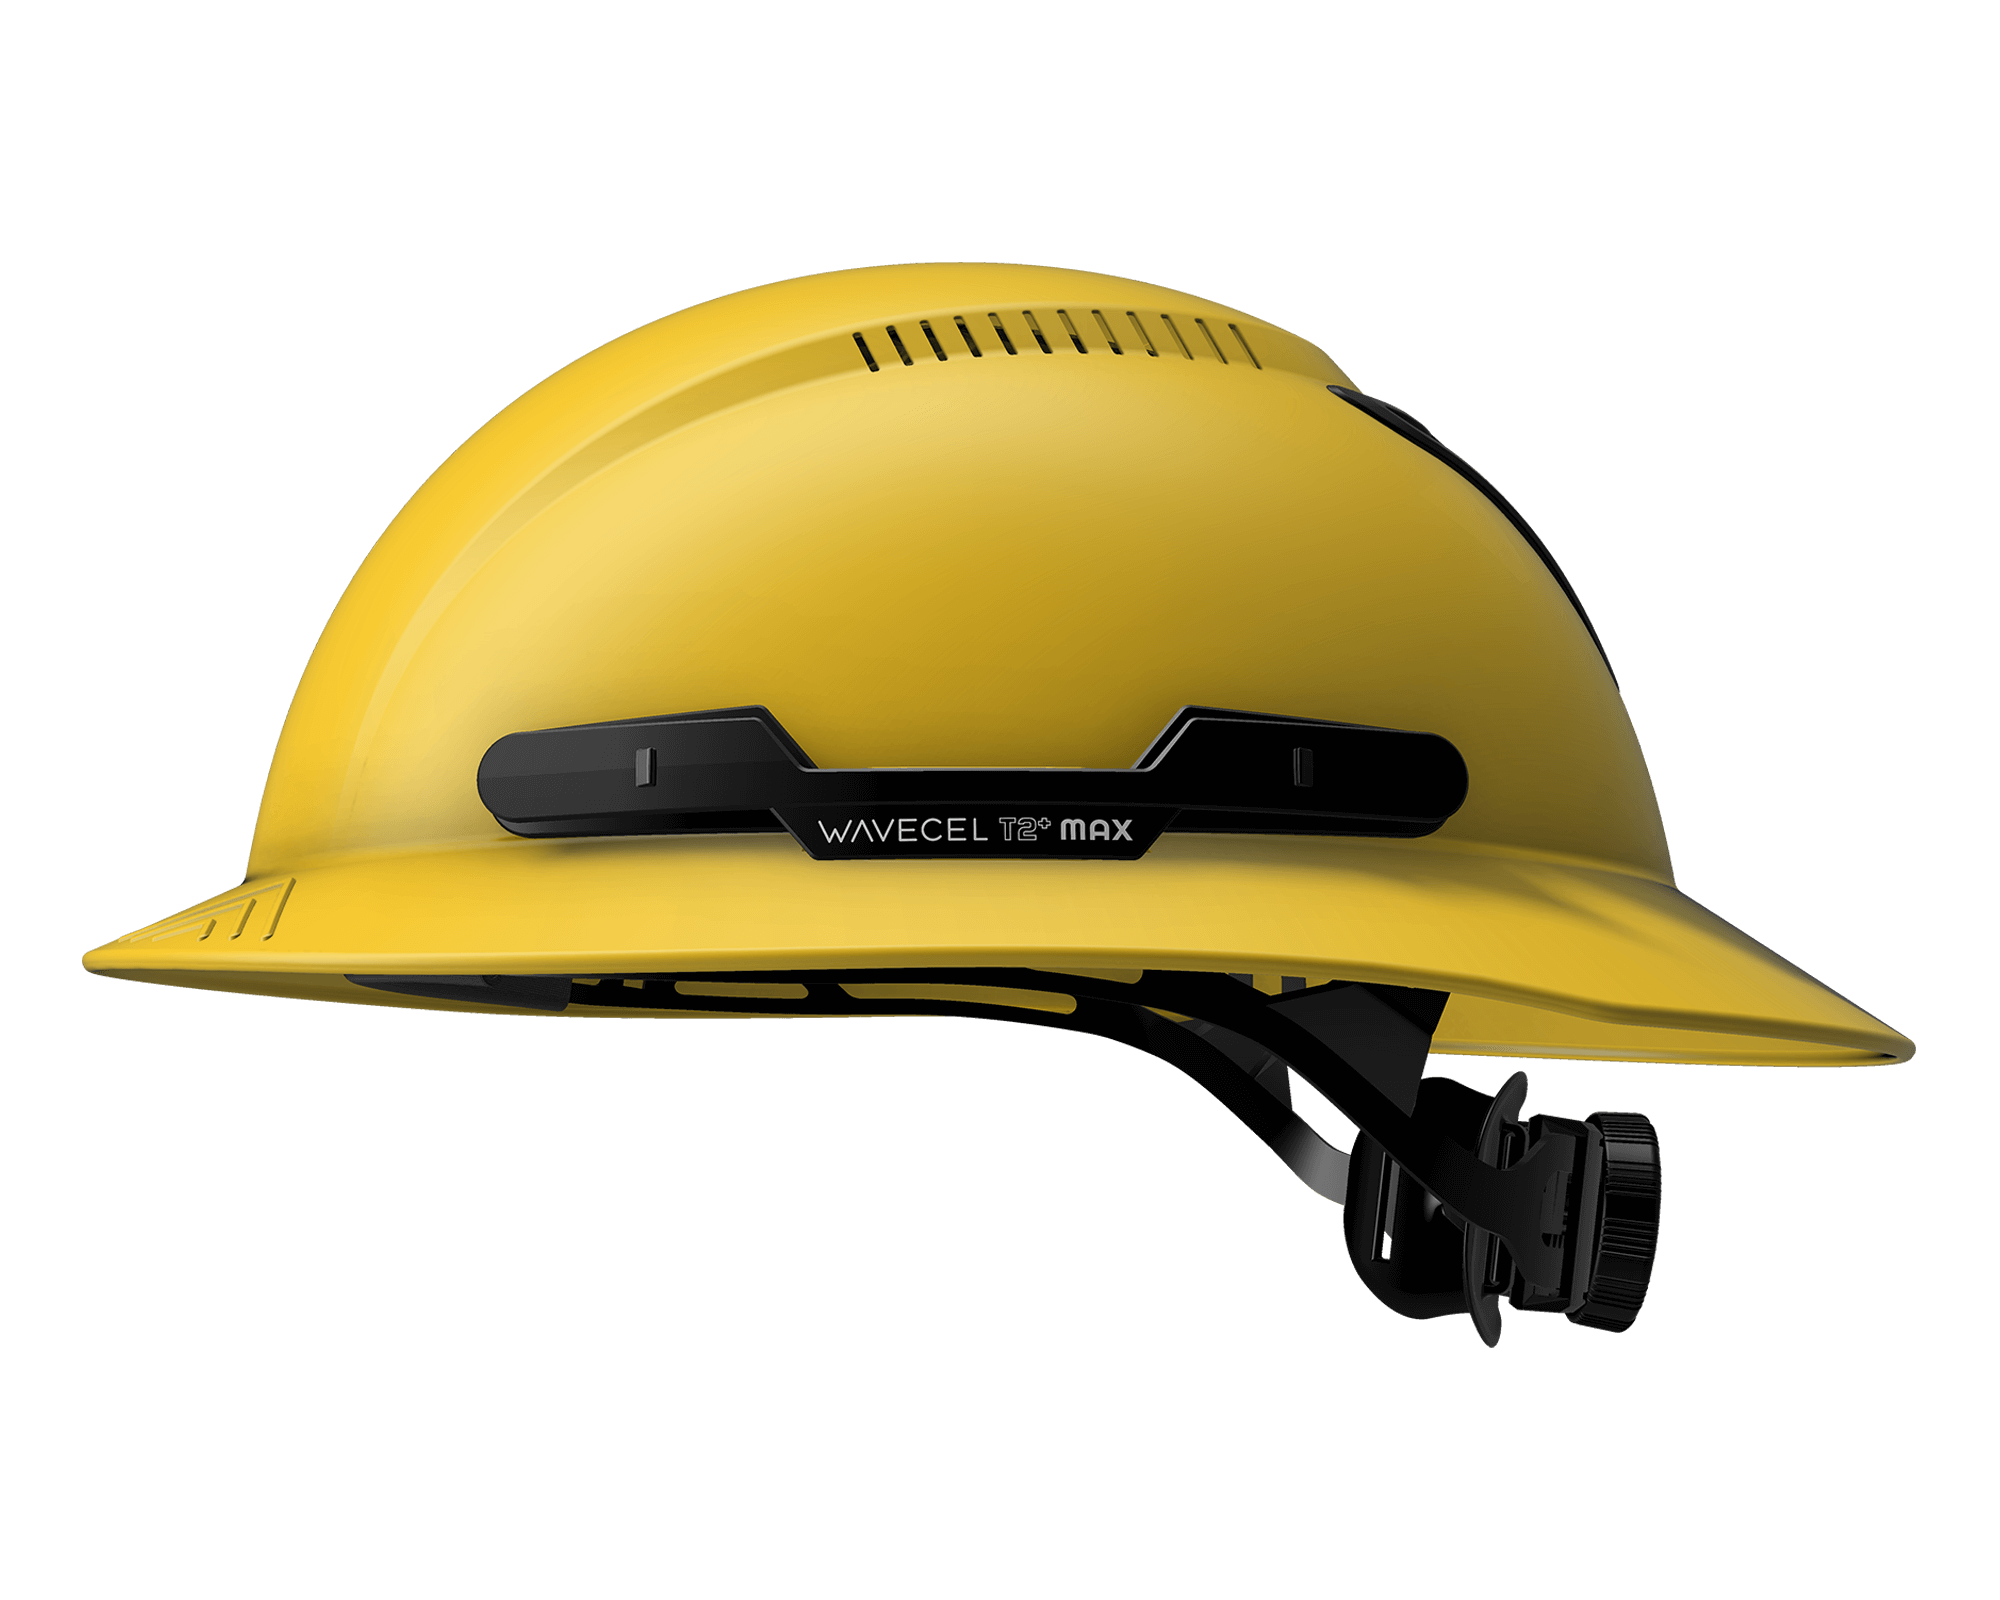 worker helmet logo